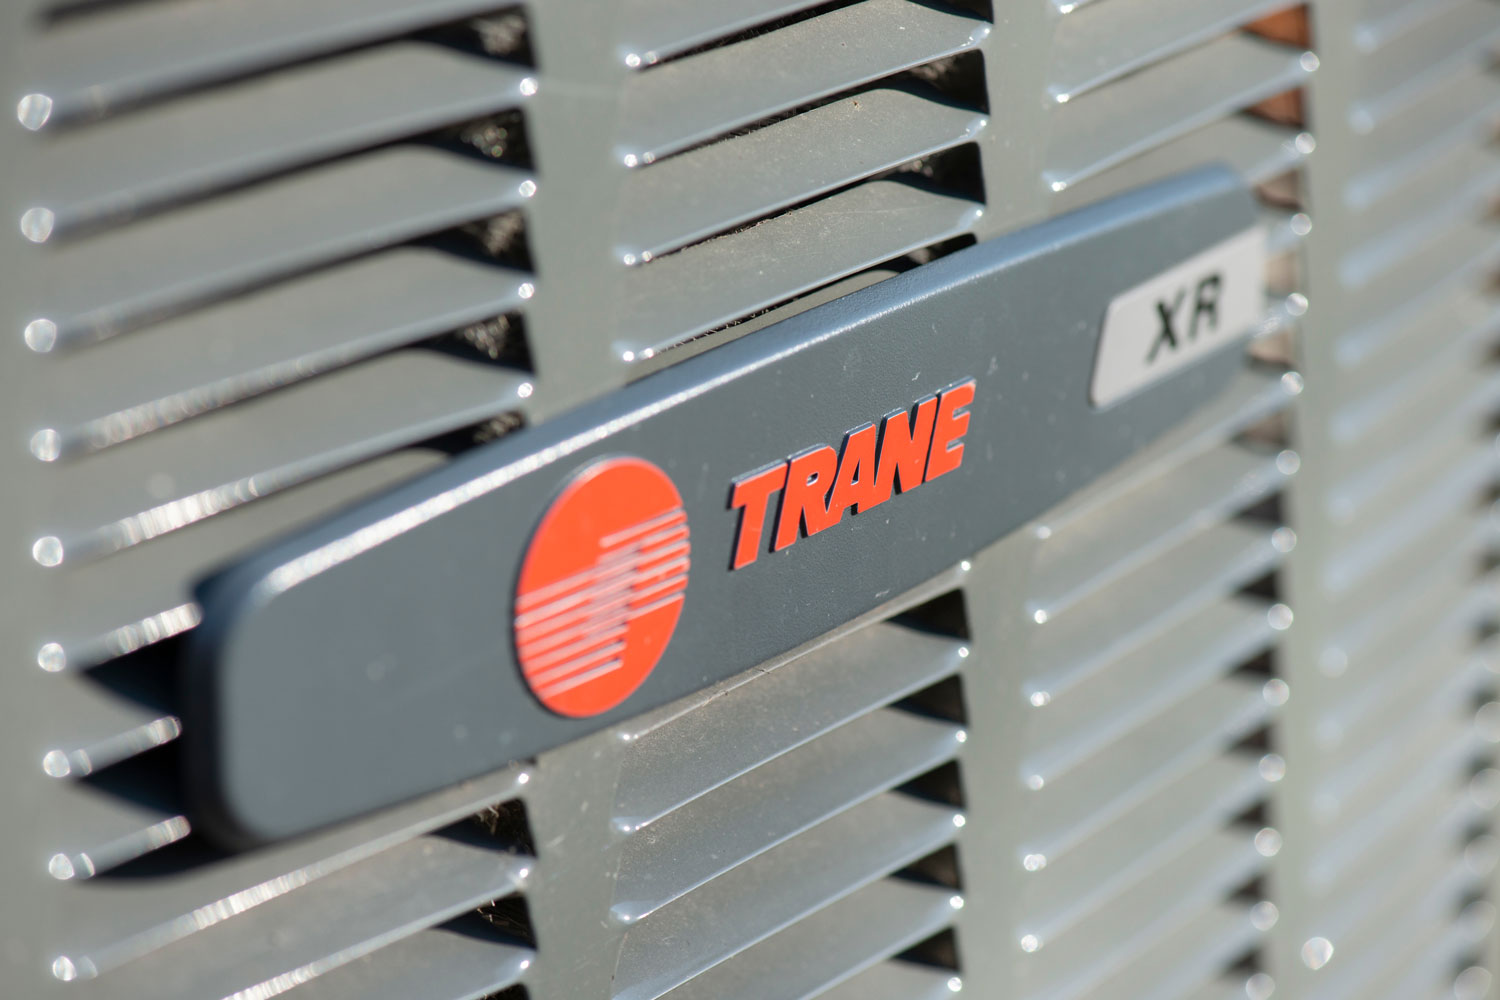 A Trane air conditioning unit emblem